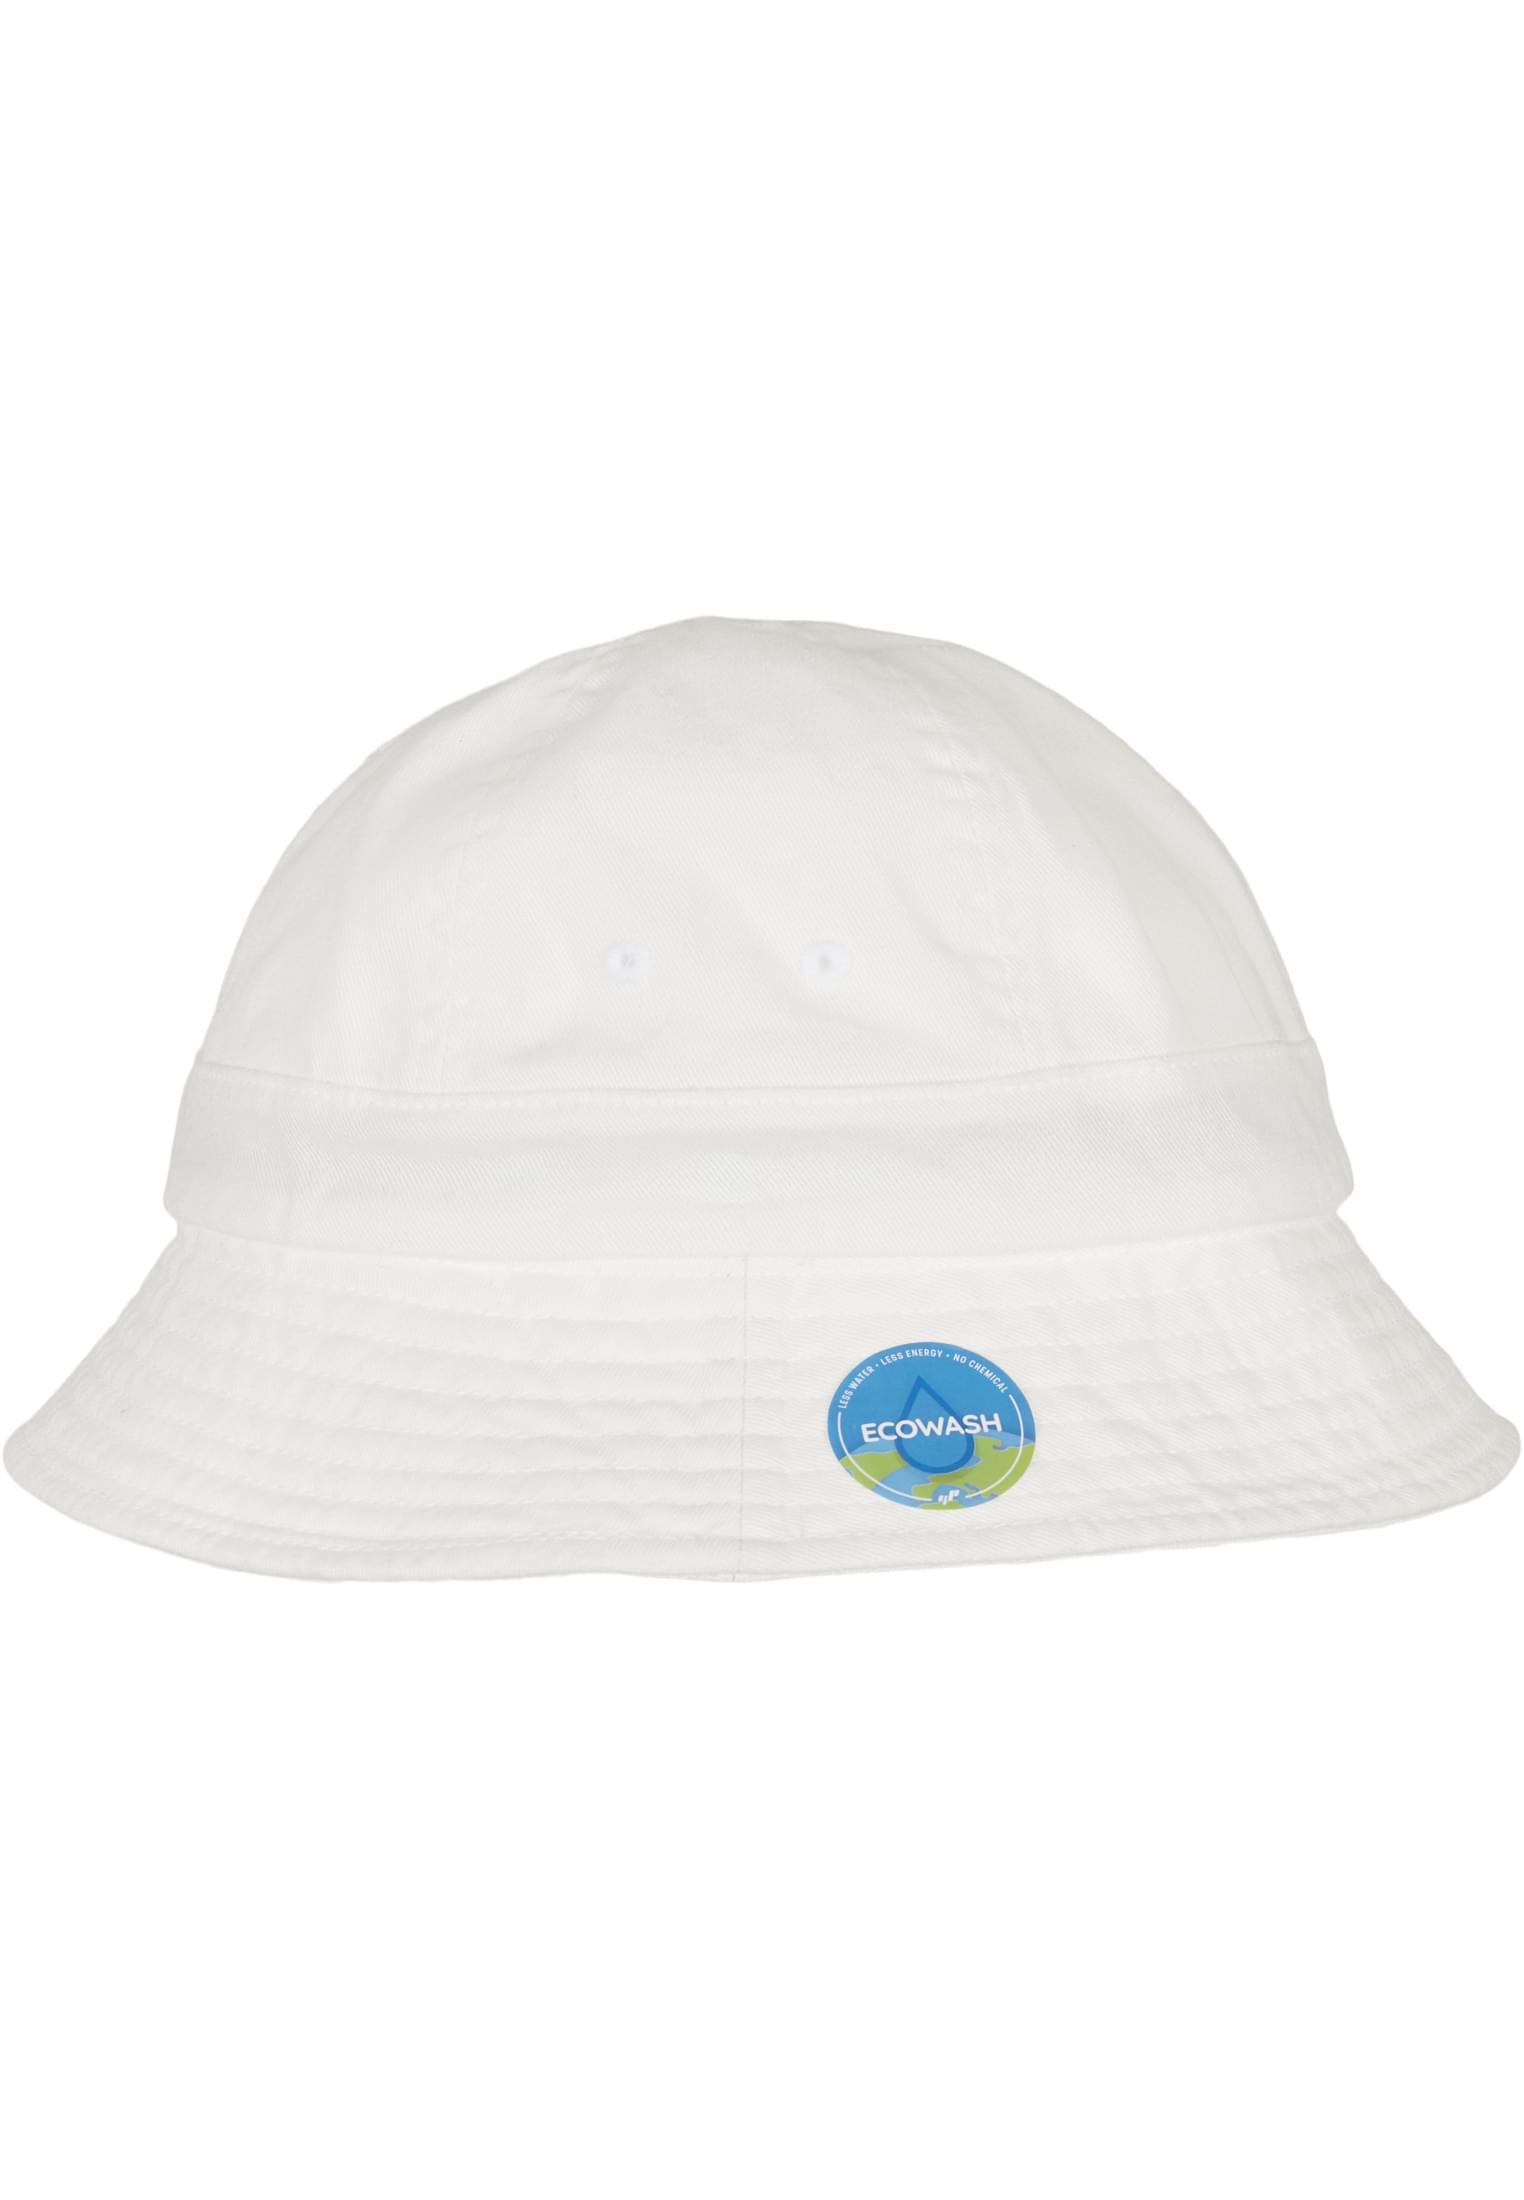 Flexfit Eco Washing Flexfit Notop Tennis Hat in Farbe white